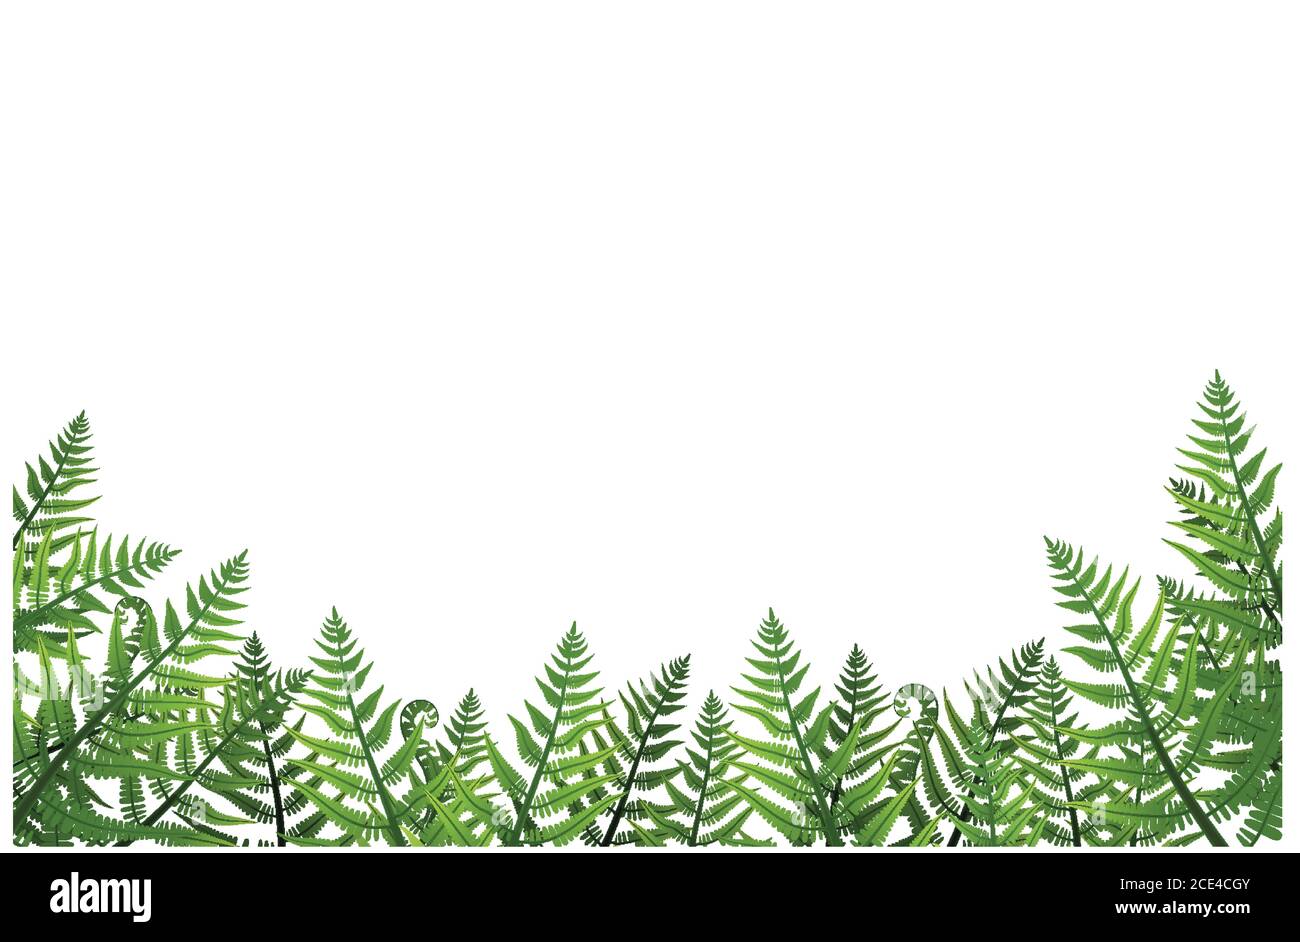 La plante de Fern ou de frein laisse le fond du cadre forestier. Illustration vectorielle dessin graphique bague vasculaire verte Illustration de Vecteur